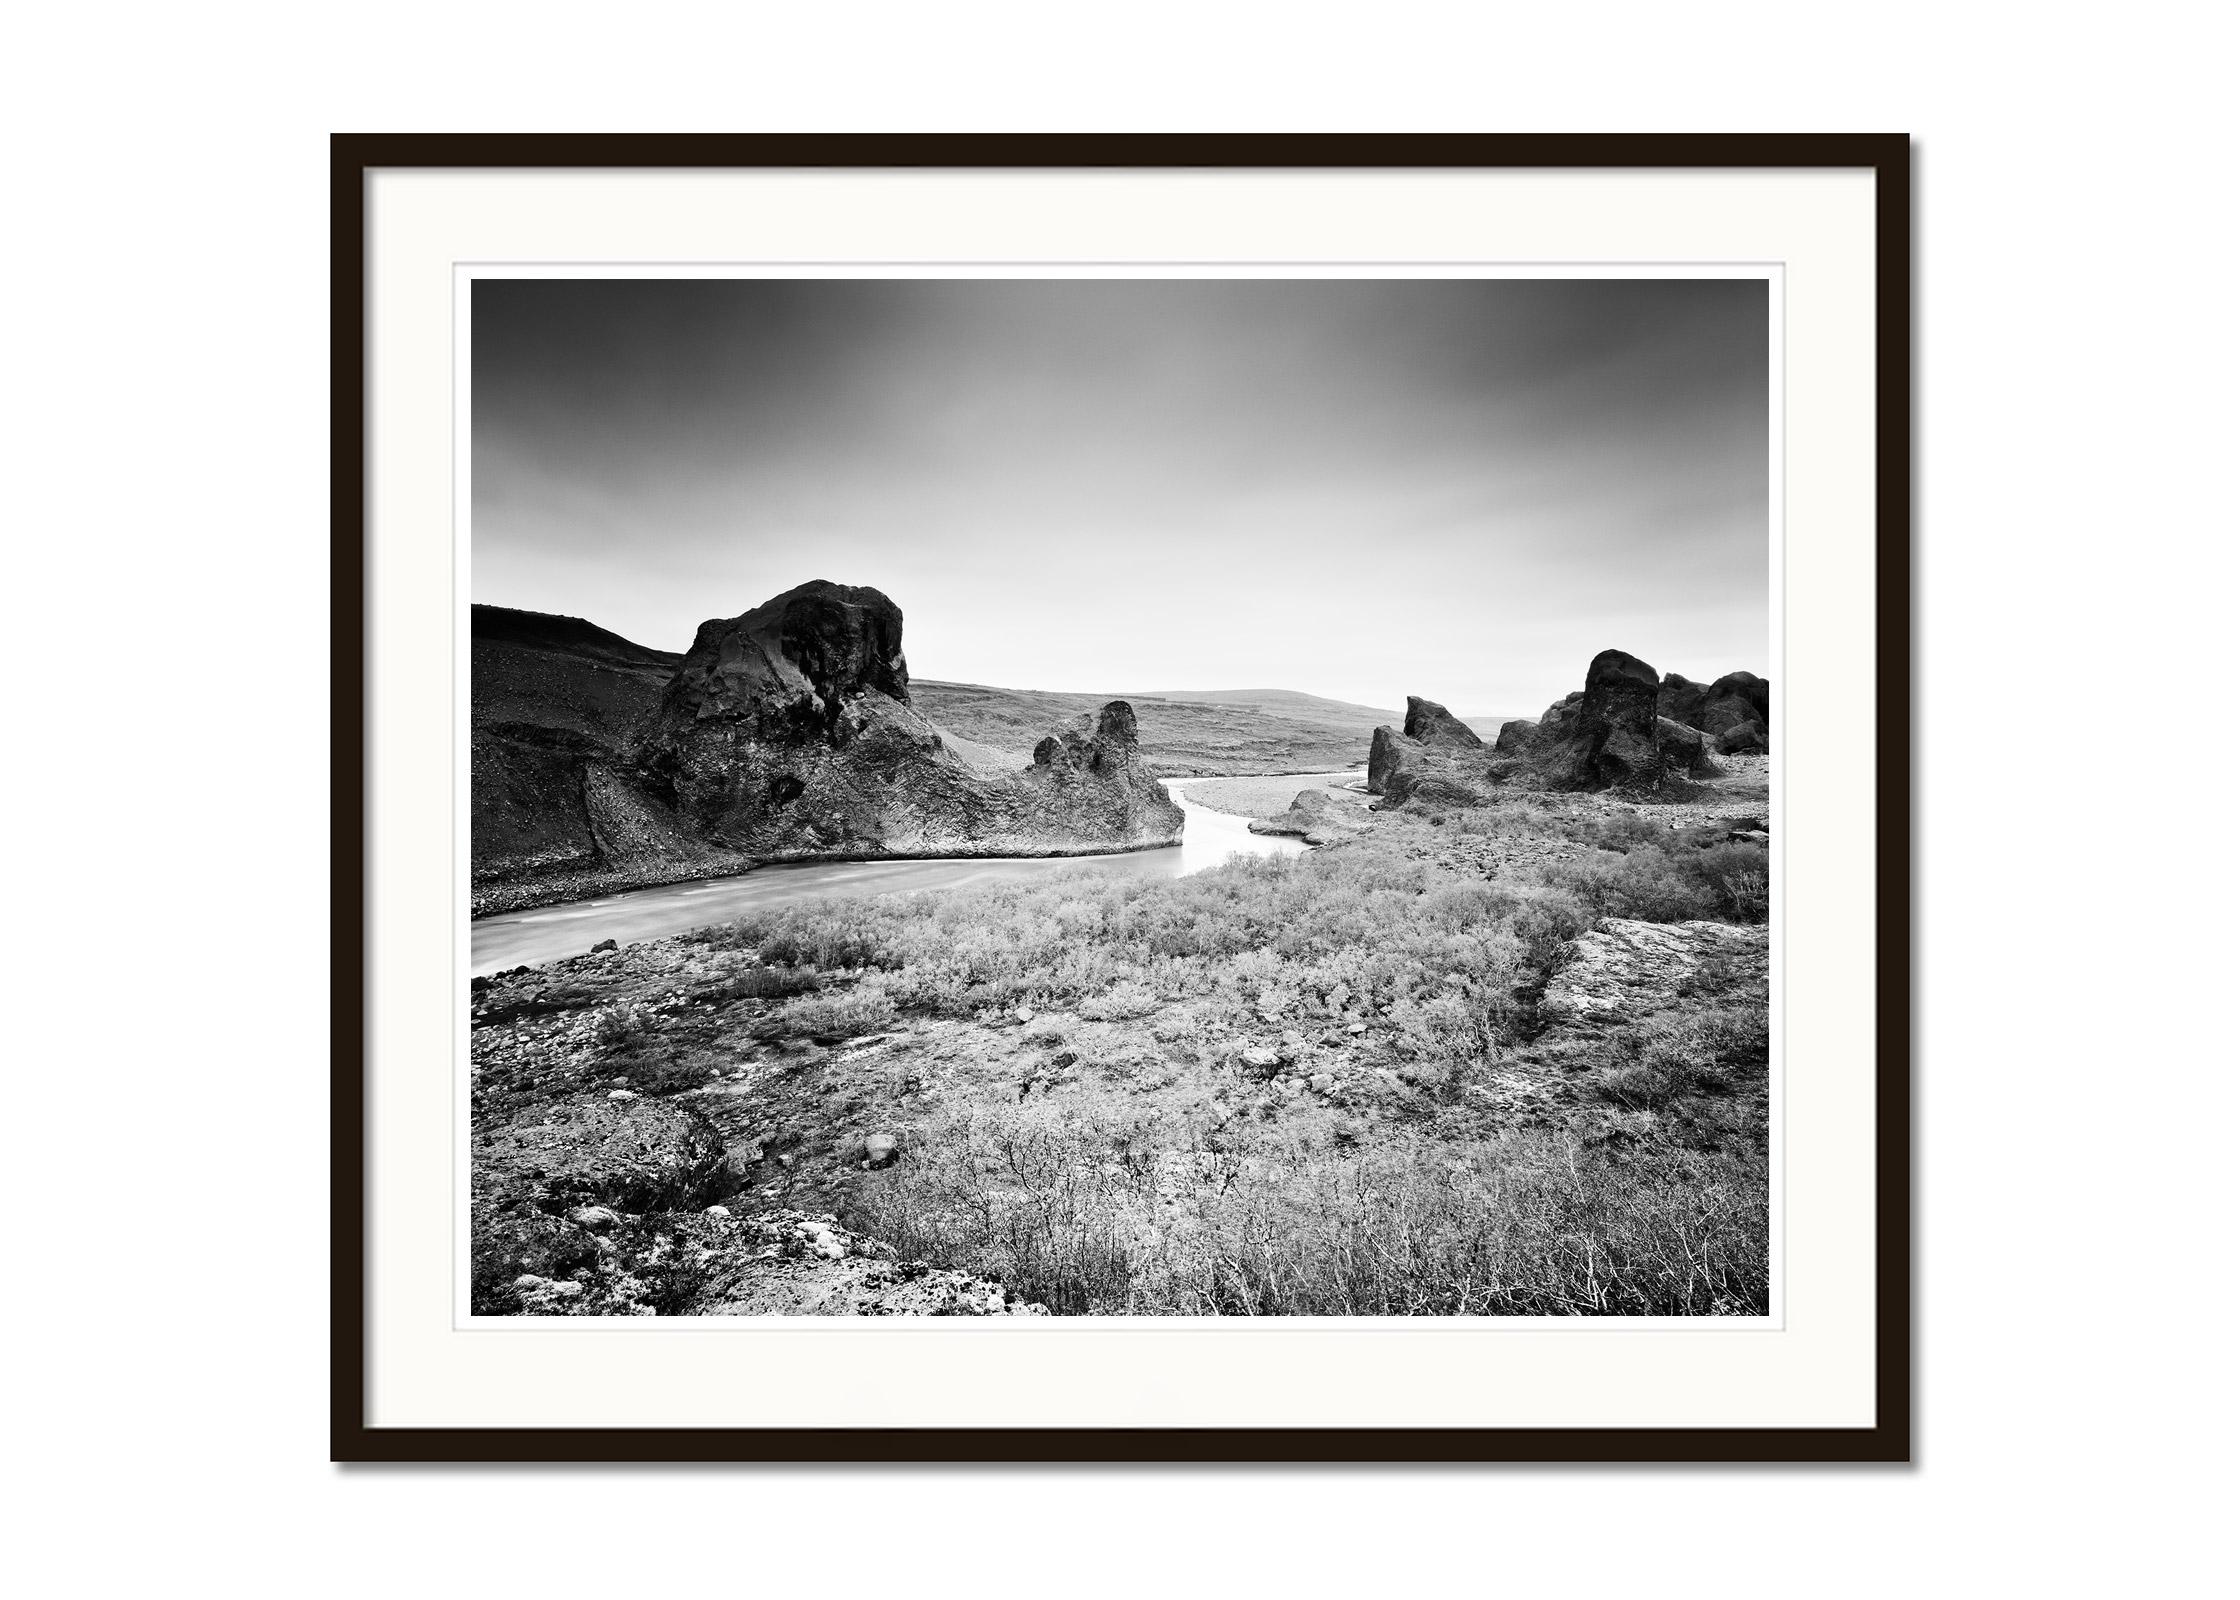 Schwarz-Weiß-Kunstfotografie, Landschaft, Rivers, Island (Grau), Black and White Photograph, von Gerald Berghammer, Ina Forstinger